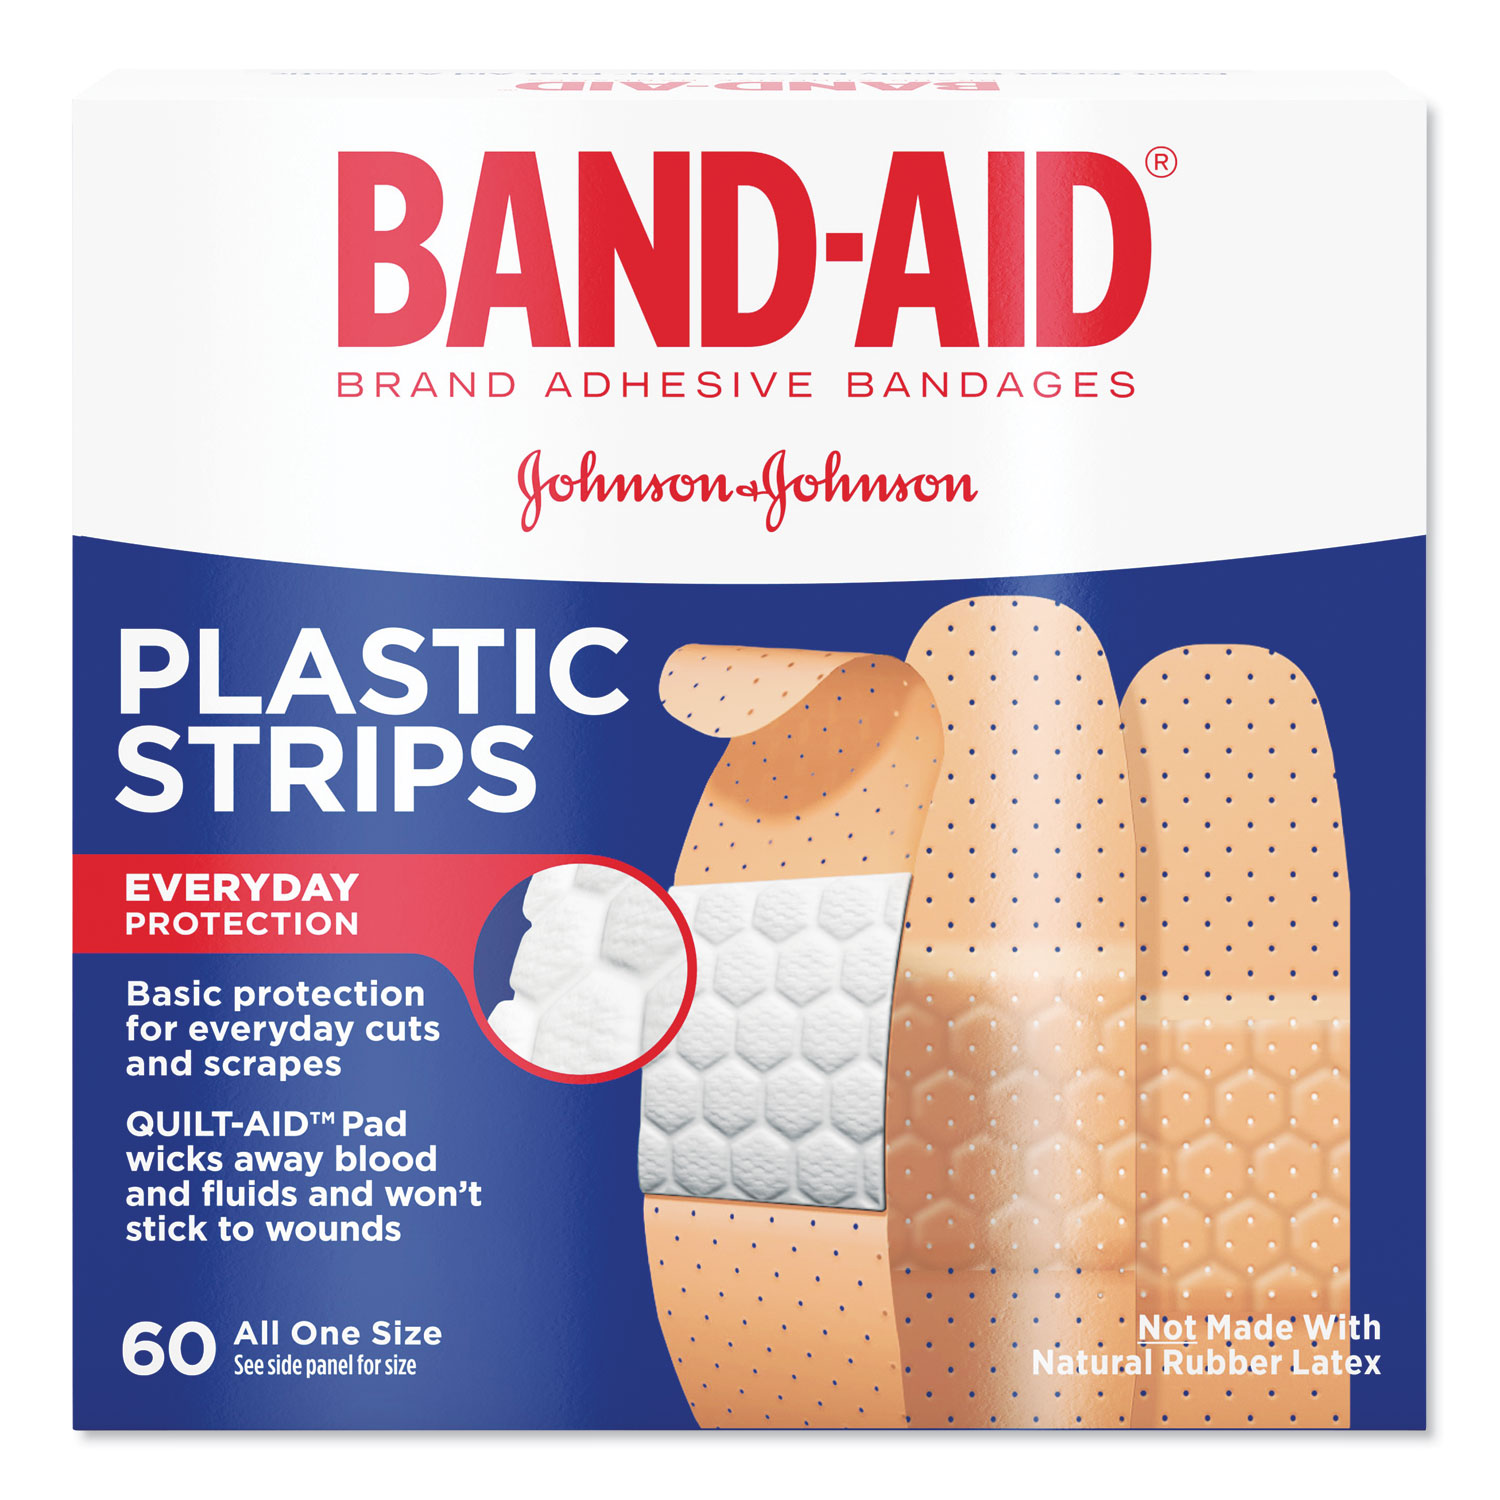  BAND-AID 100563500 Plastic Adhesive Bandages, 3/4 x 3, 60/Box (JOJ100563500) 